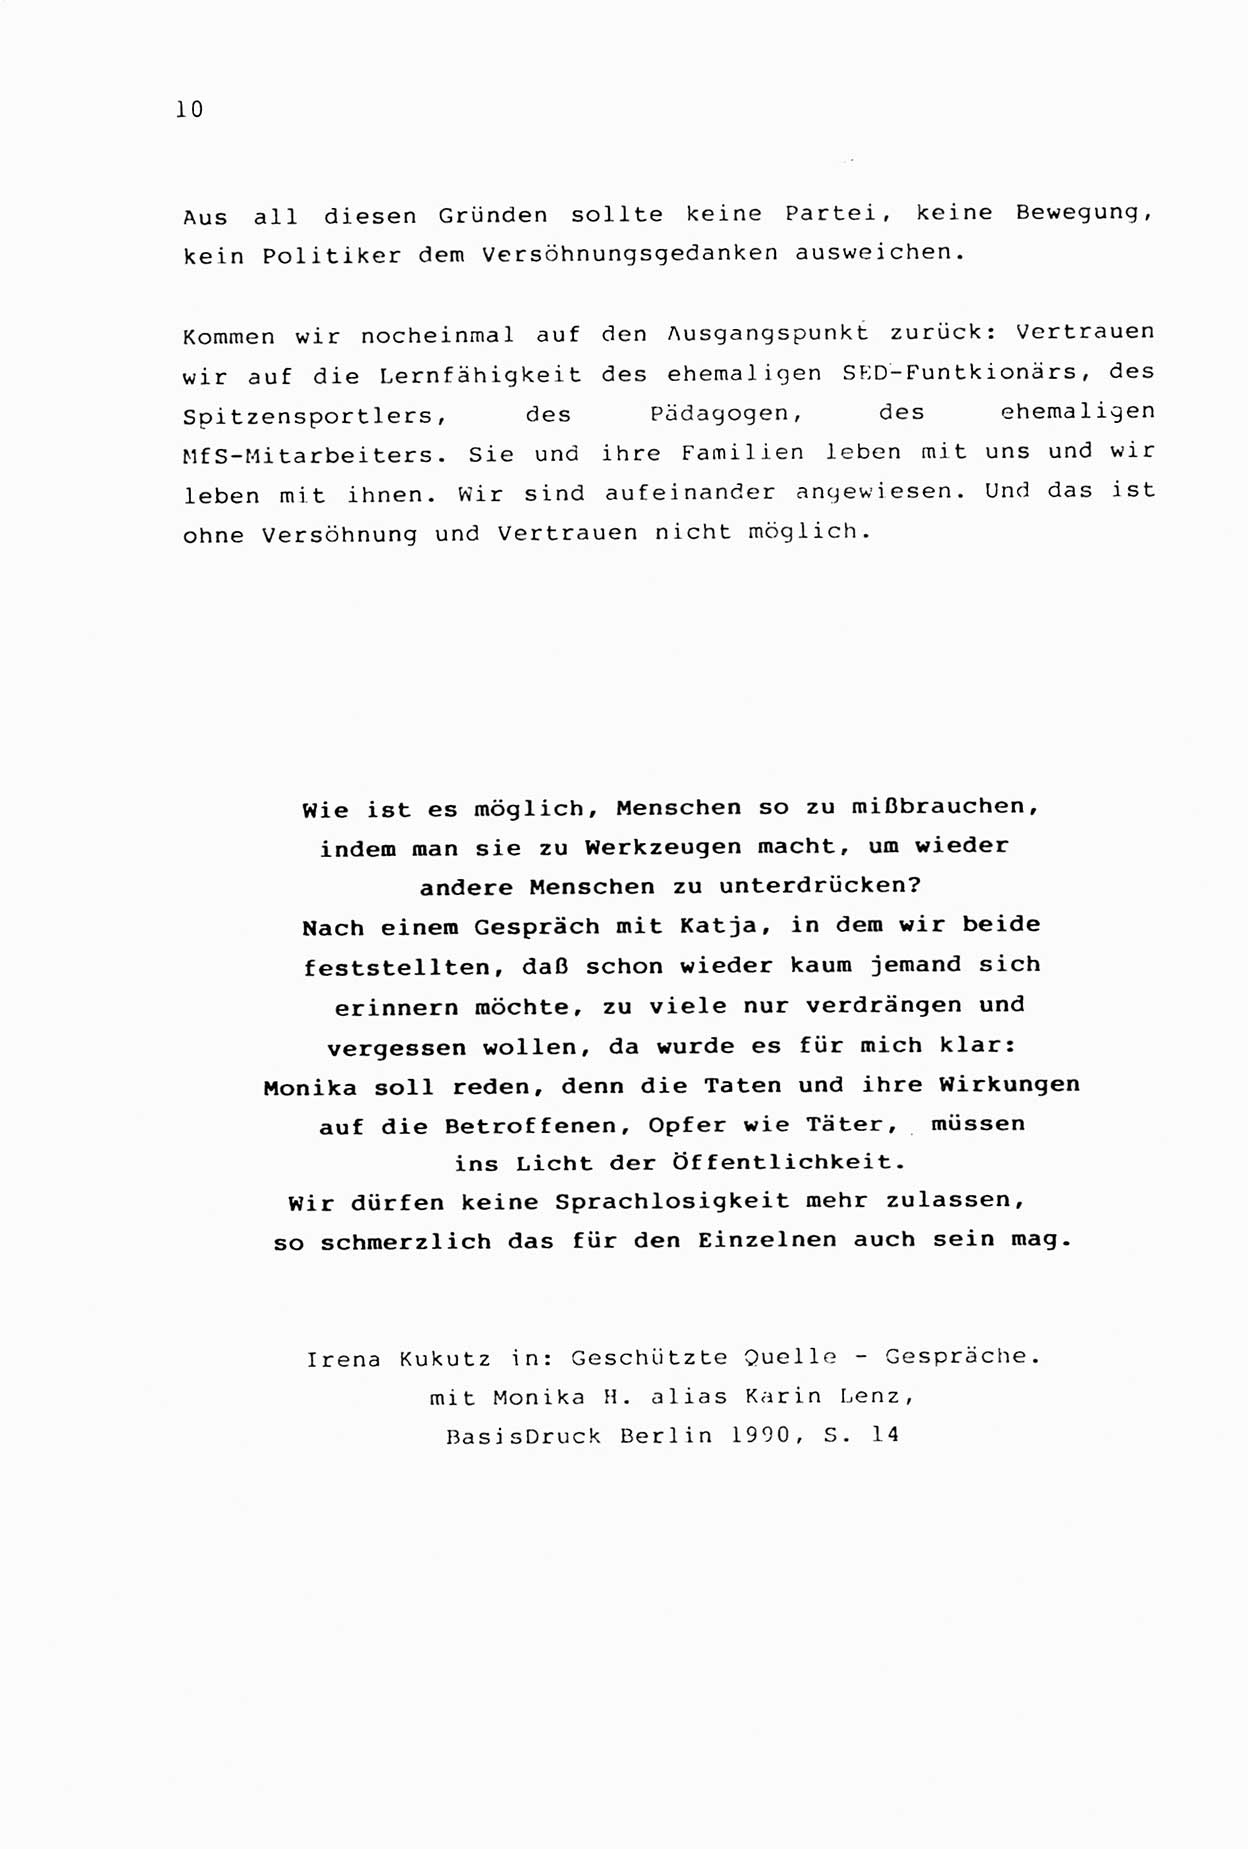 Zwie-Gespräch, Beiträge zur Aufarbeitung der Stasi-Vergangenheit [Deutsche Demokratische Republik (DDR)], Ausgabe Nr. 2, Berlin 1991, Seite 10 (Zwie-Gespr. Ausg. 2 1991, S. 10)